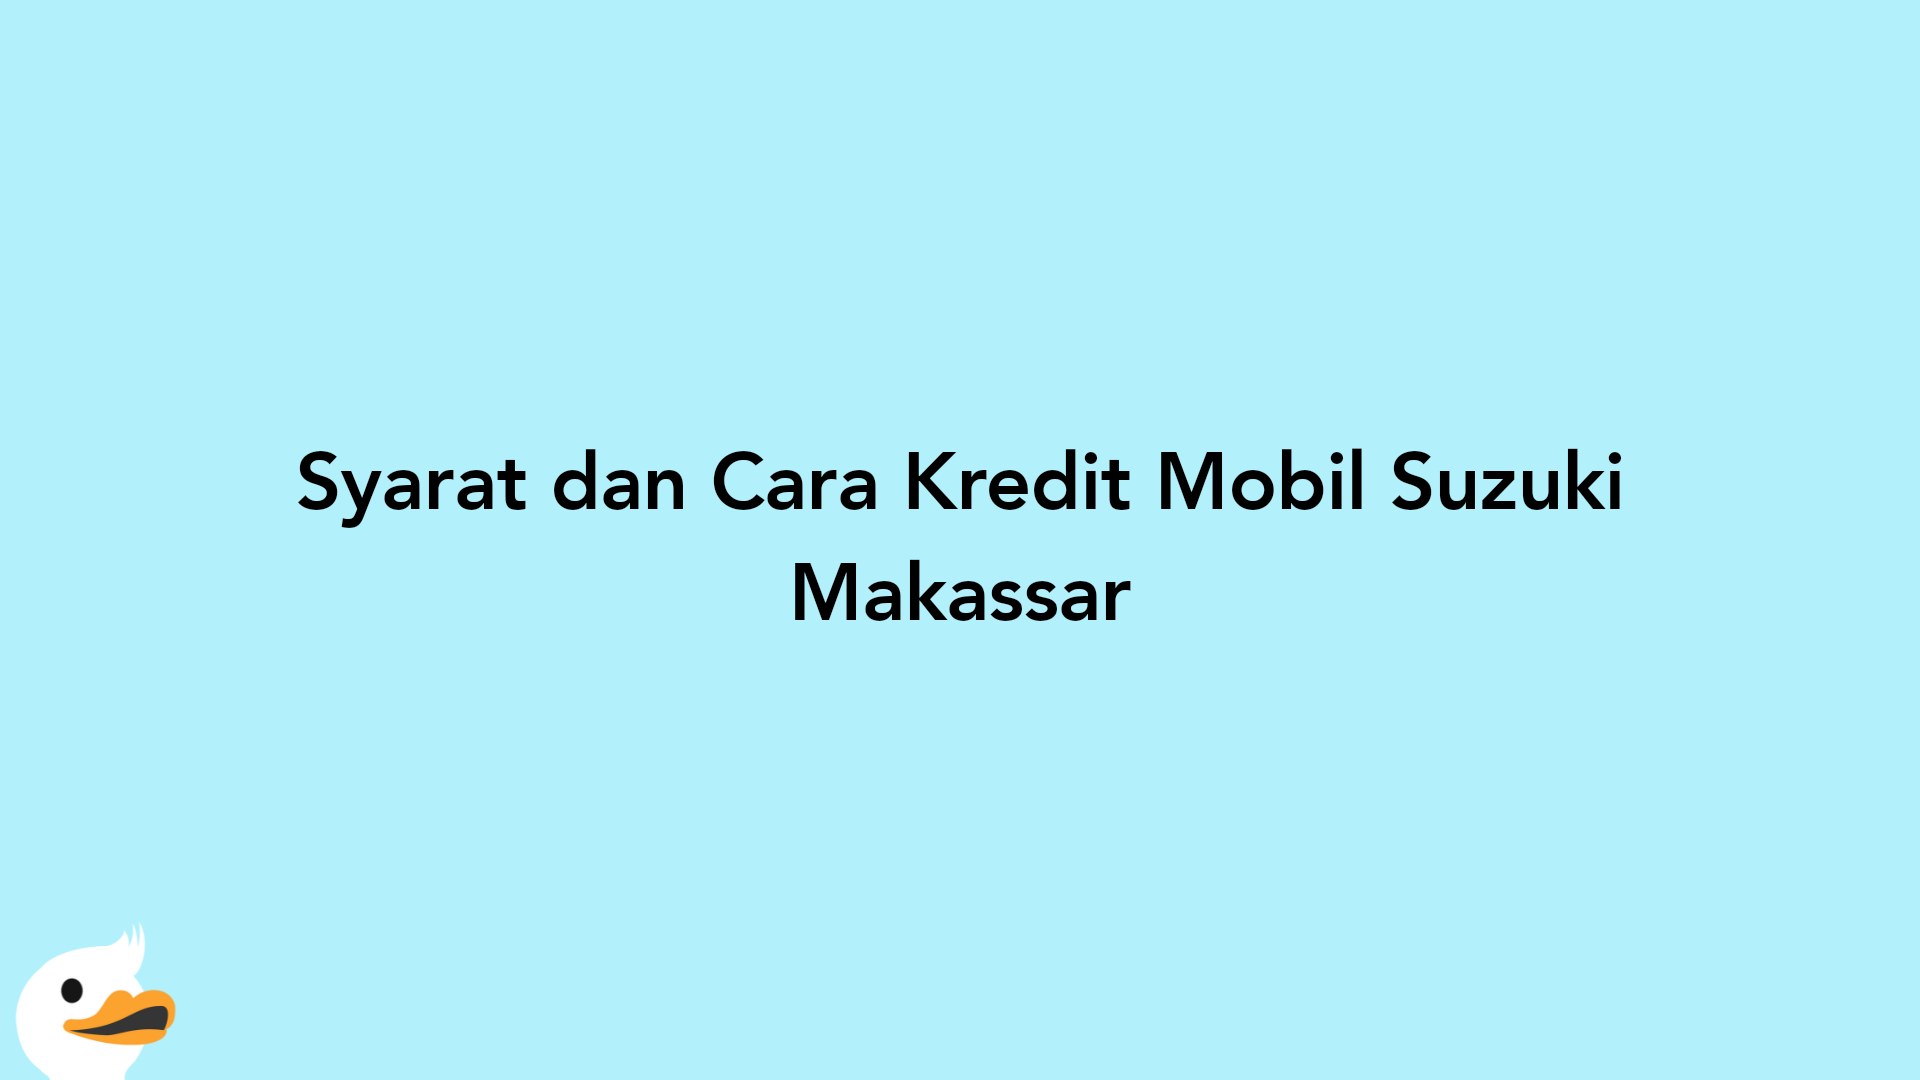 Syarat dan Cara Kredit Mobil Suzuki Makassar